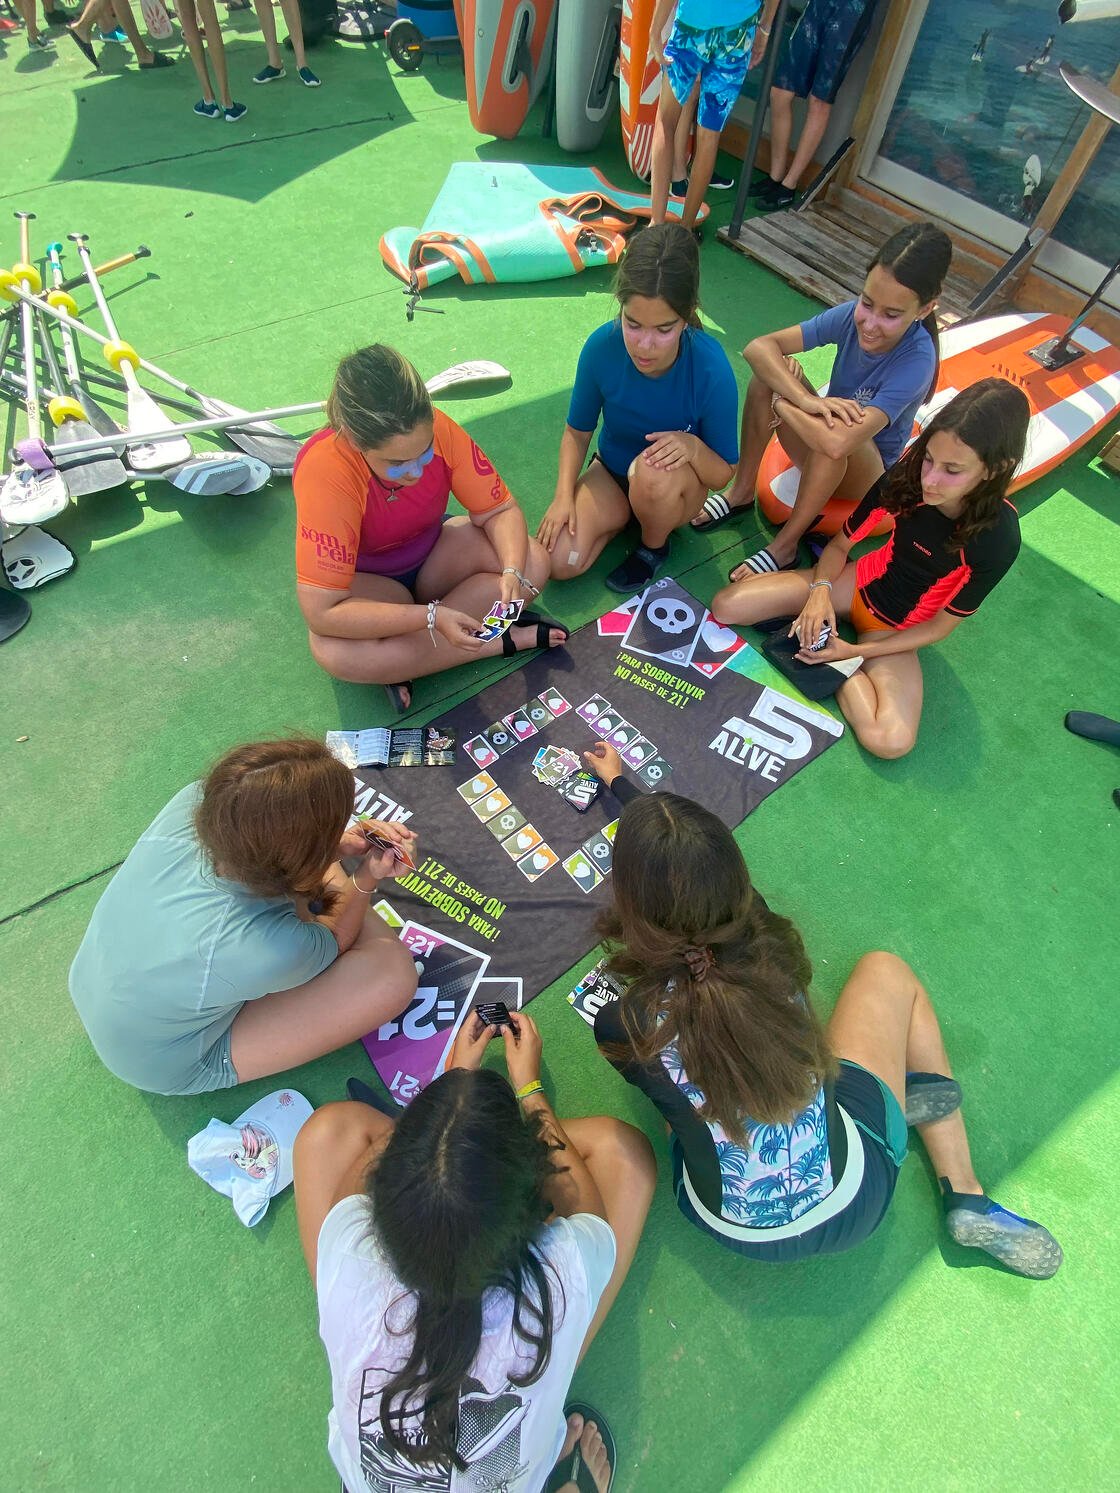 5 ALIVE: El juego de cartas que llena de diversión los campamentos de verano 3